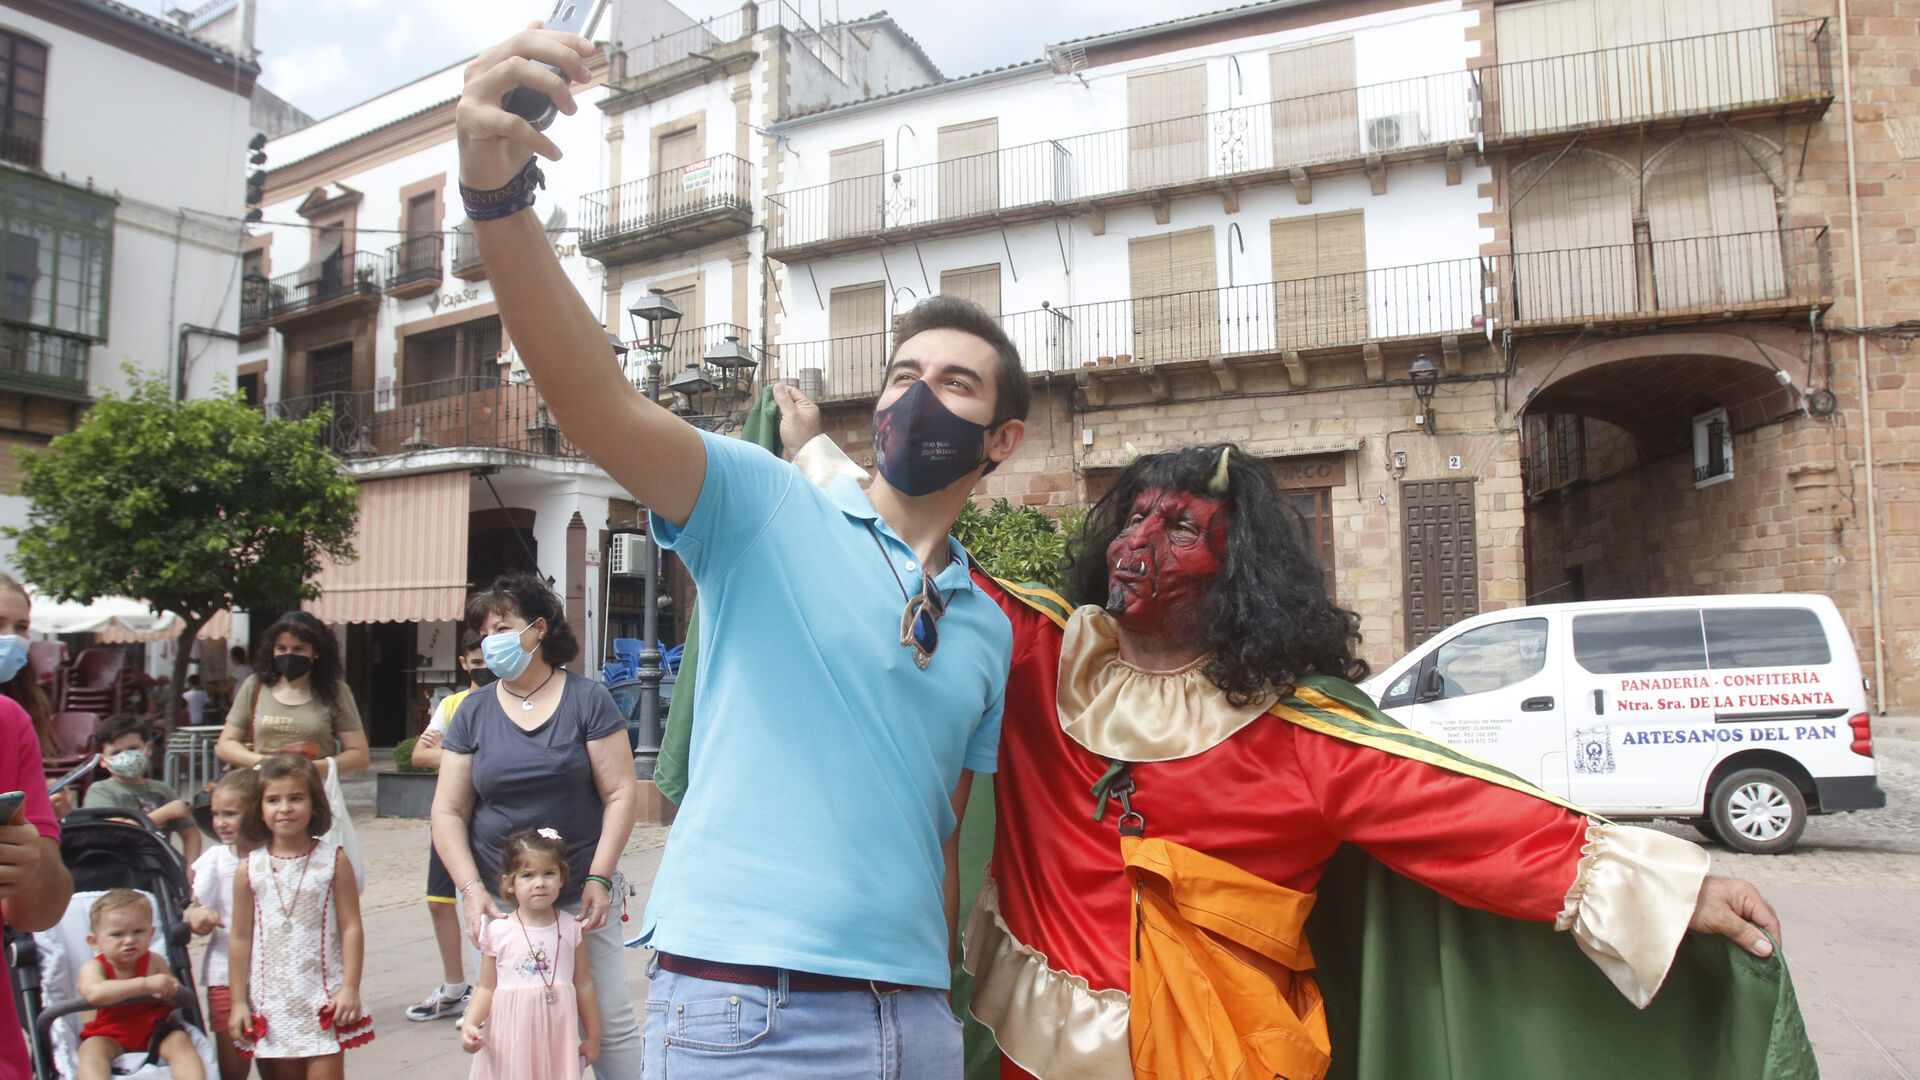 El terror de la Diablilla por las calles de Montoro, en fotograf&iacute;as